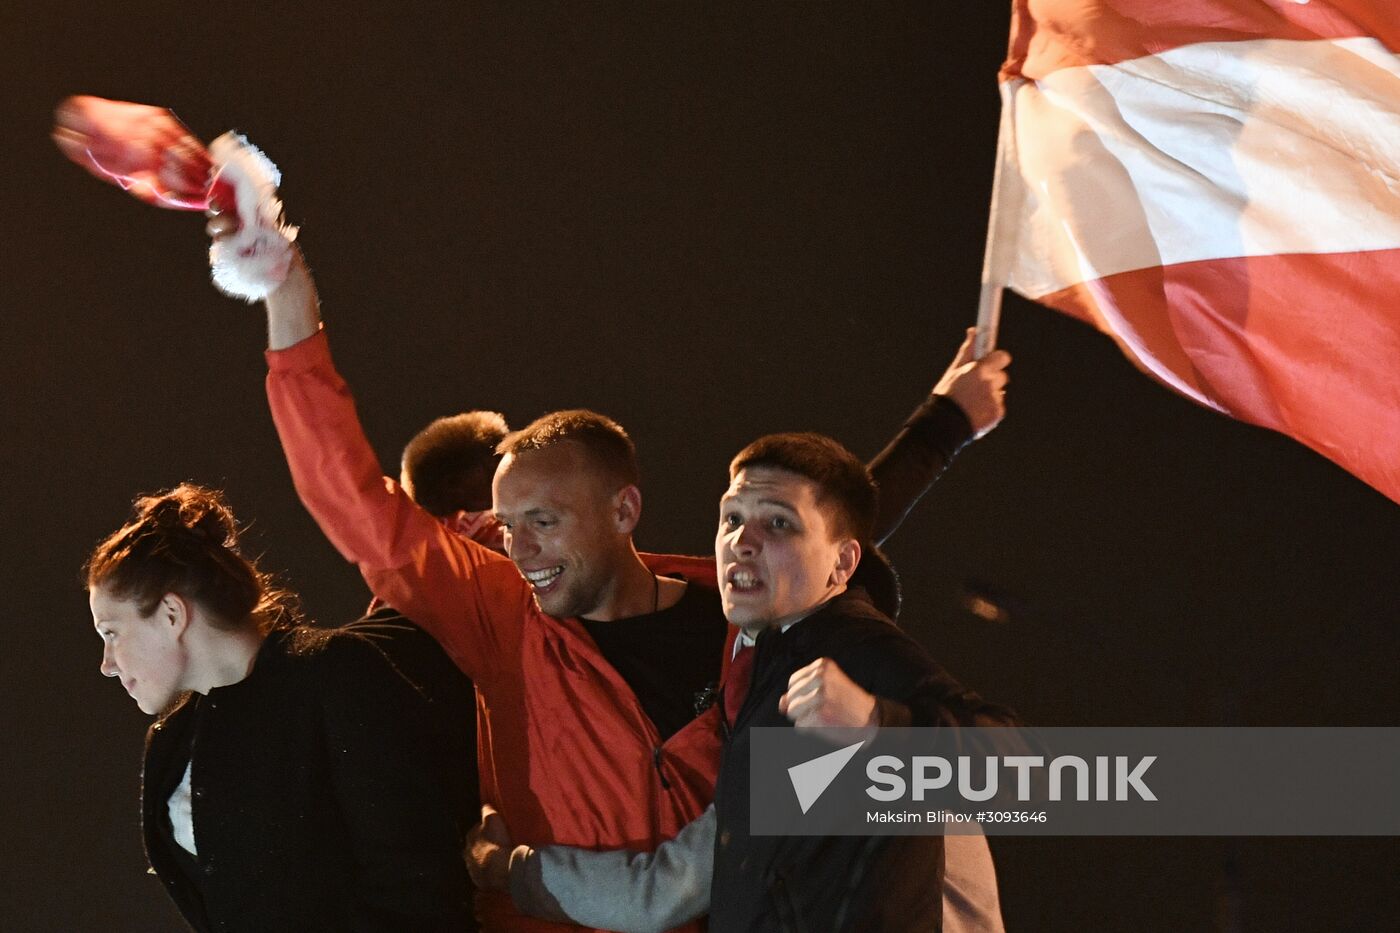 Spartak wins Premier League title